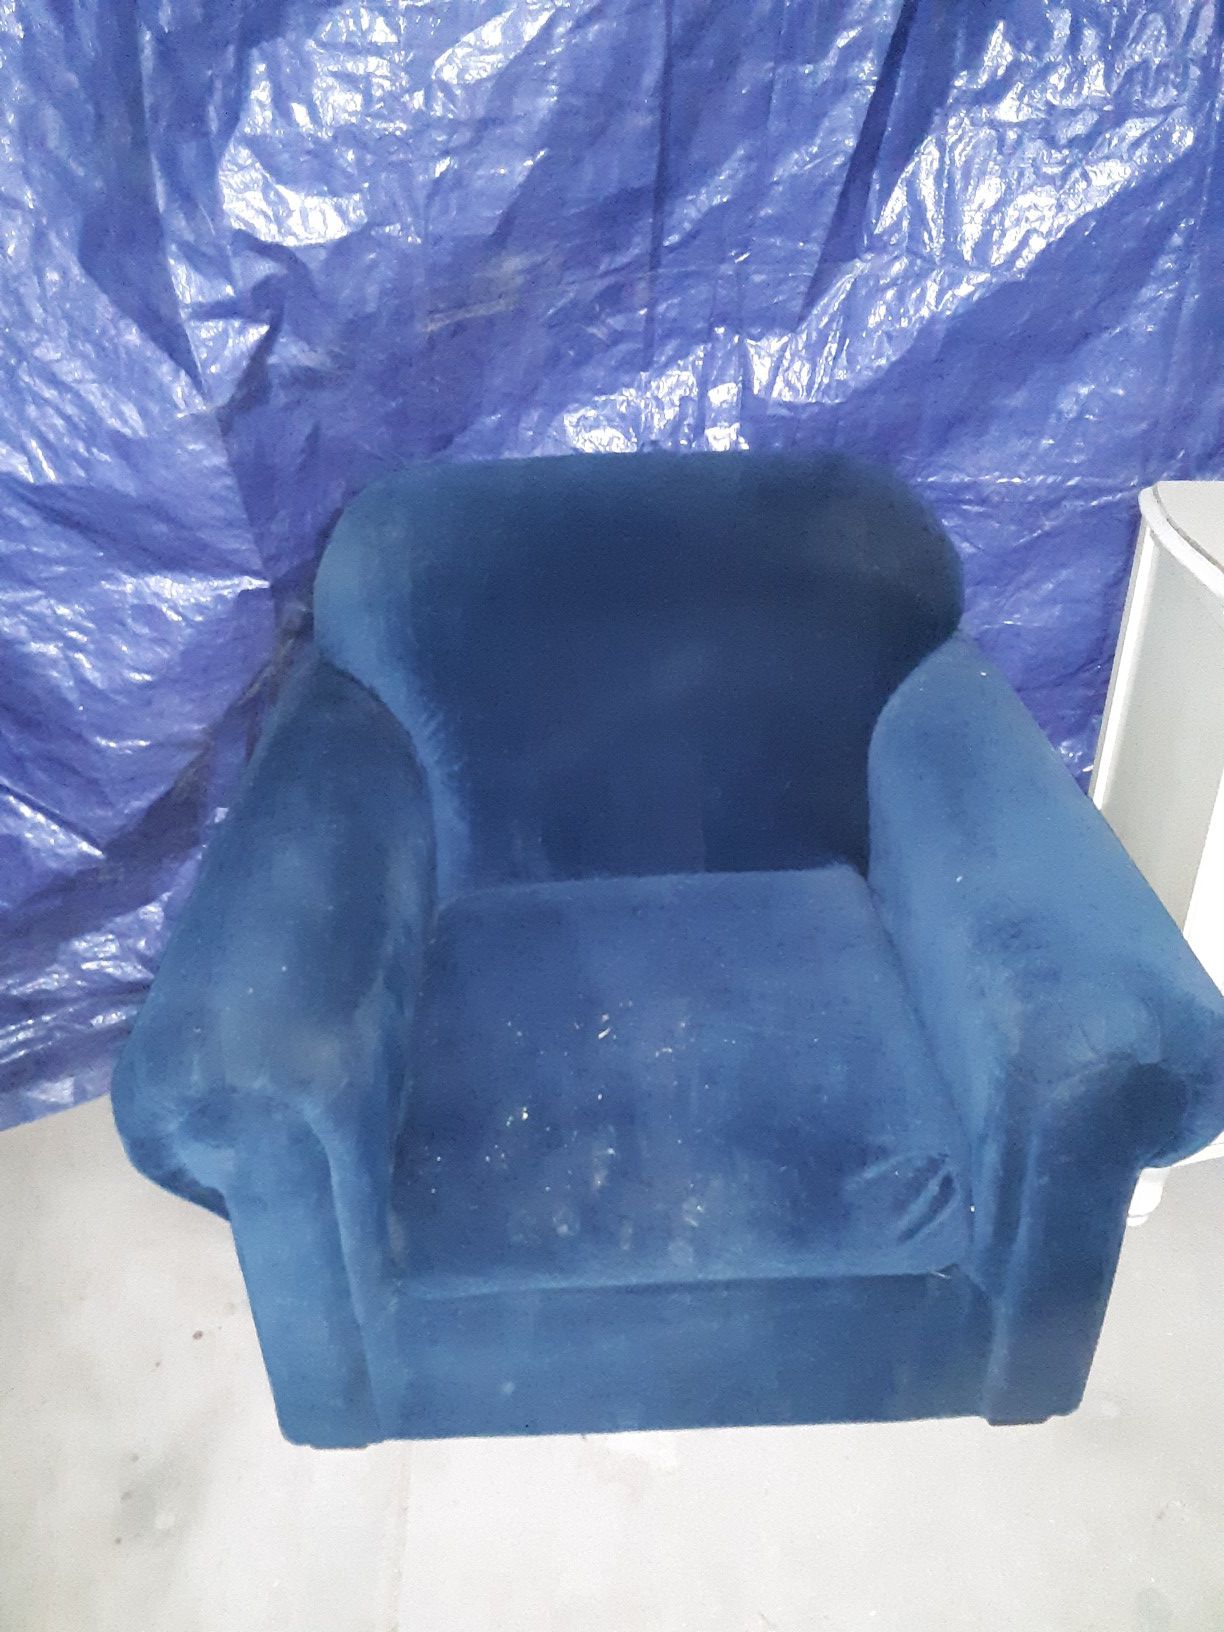 Blue sofa chair